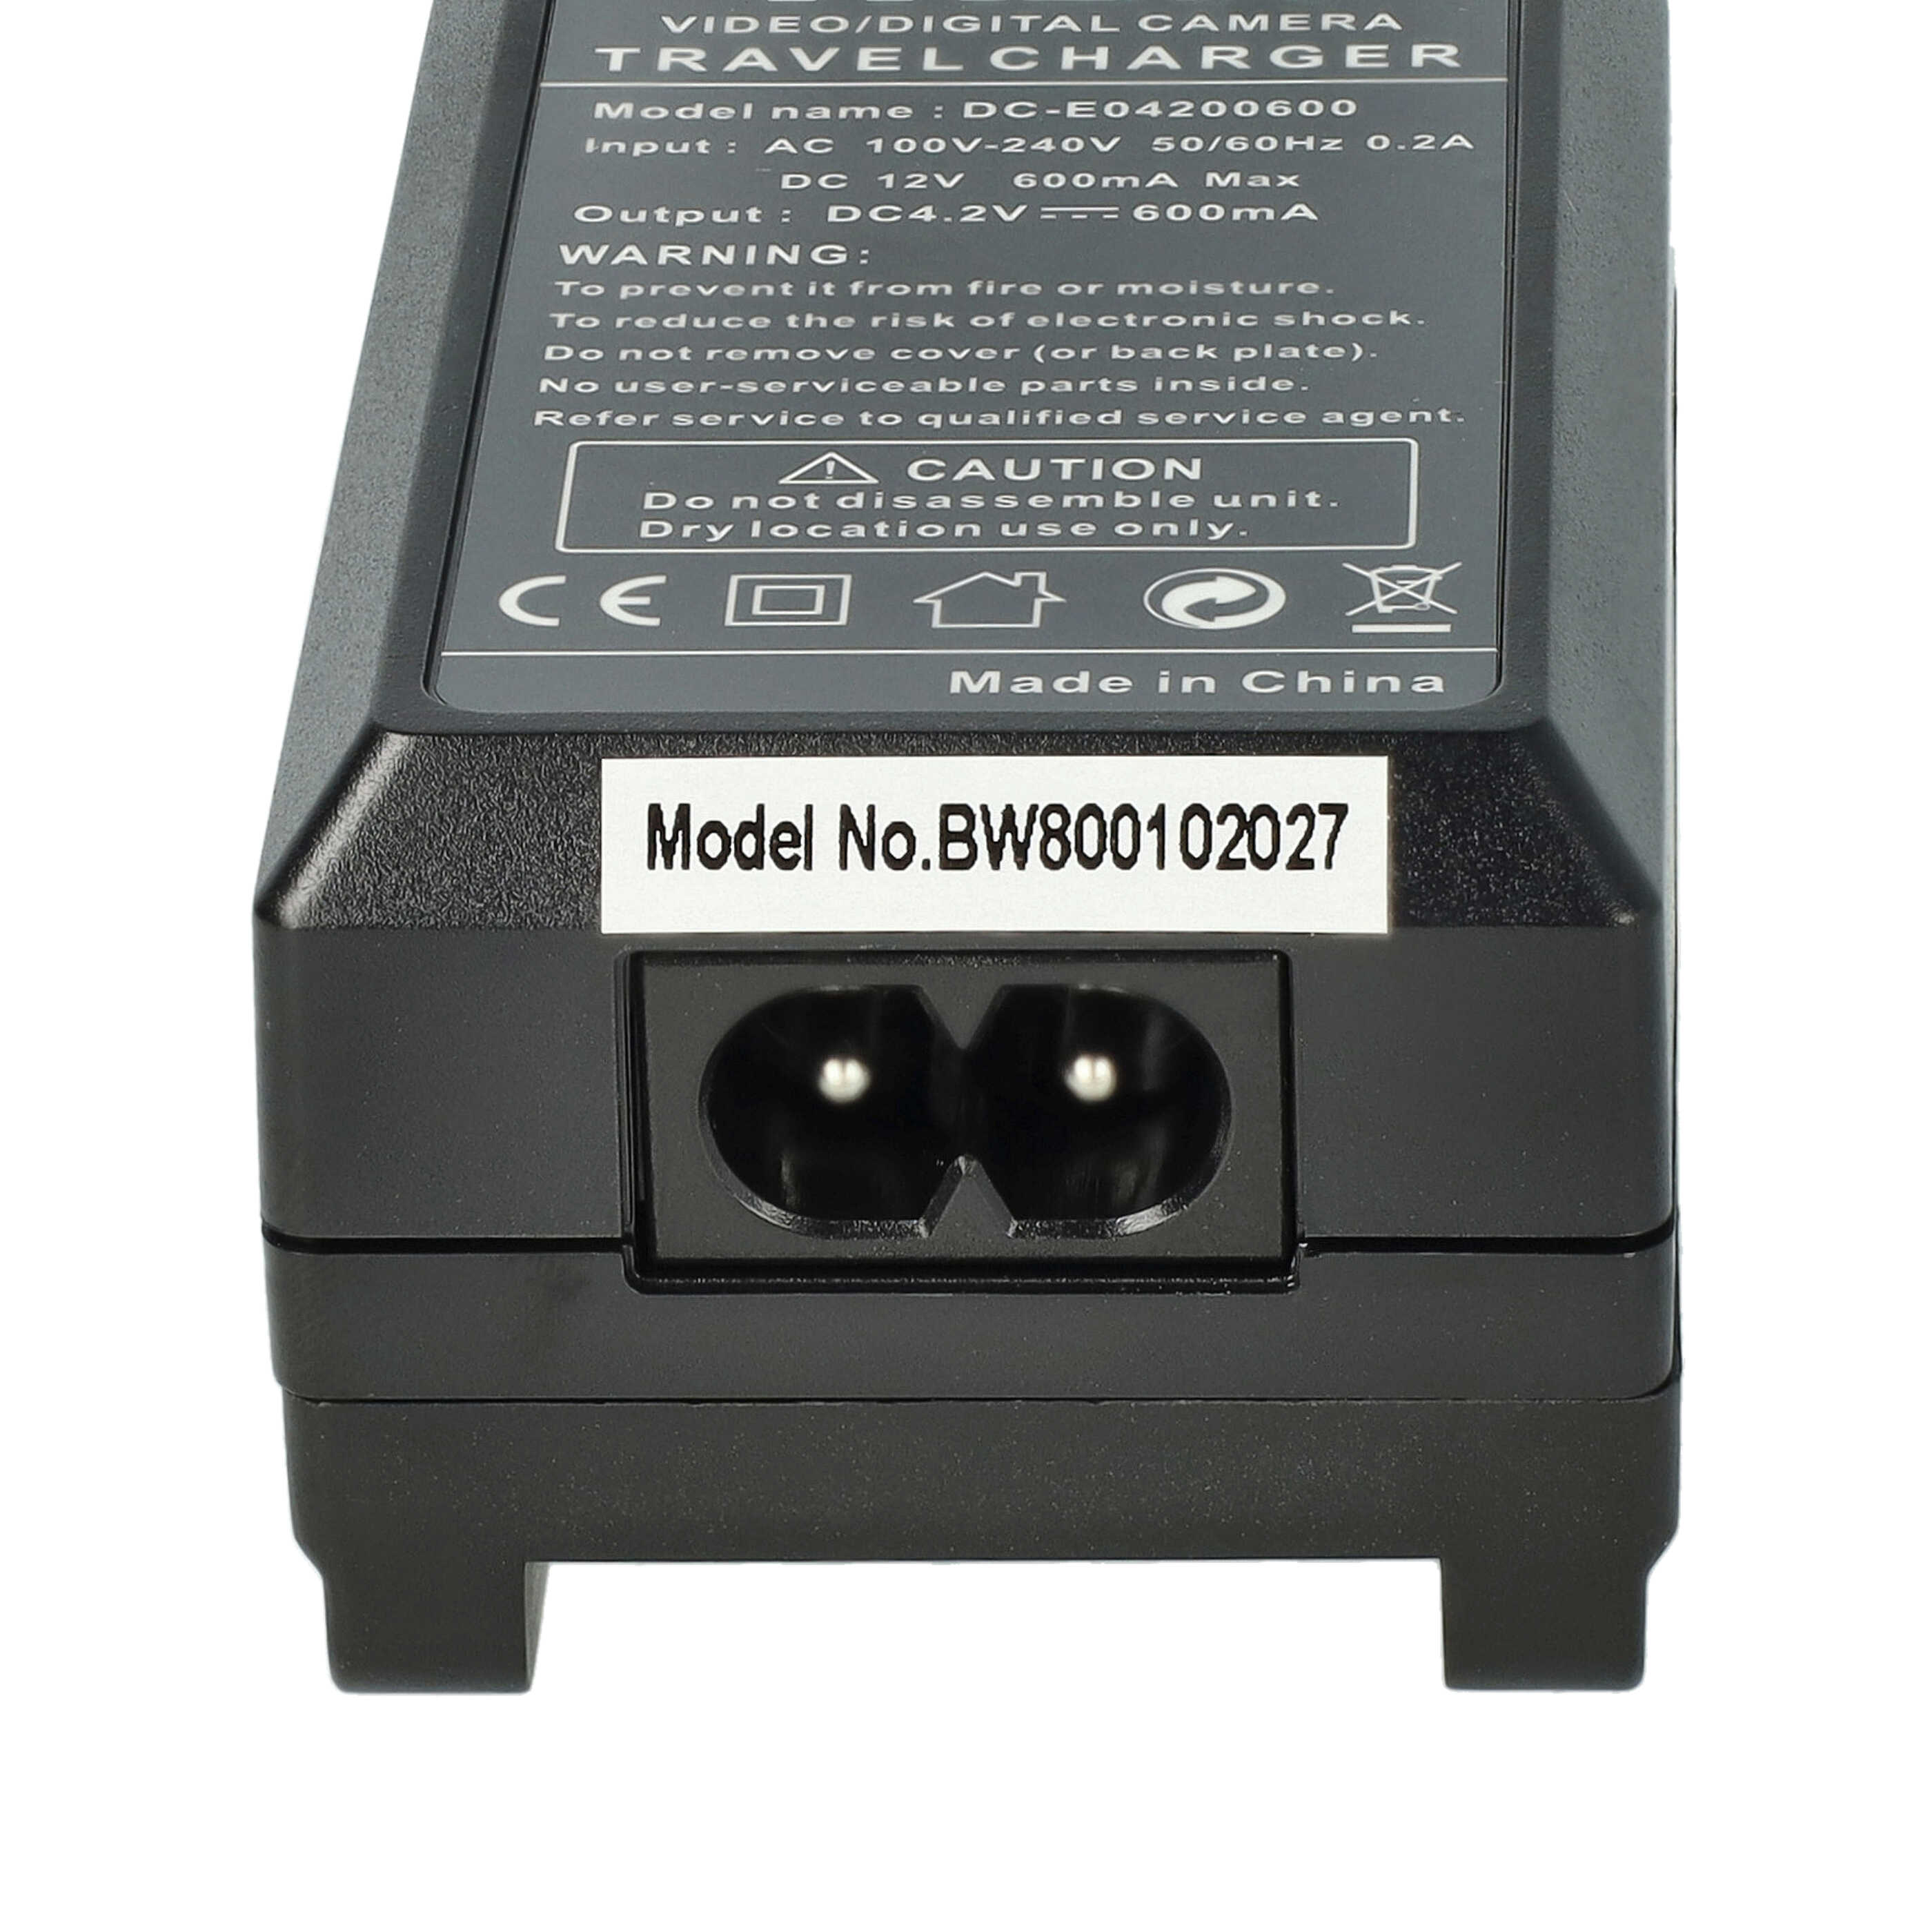 Battery Charger suitable for Everio GZ- HM440AEU Camera etc. - 0.6 A, 4.2 V